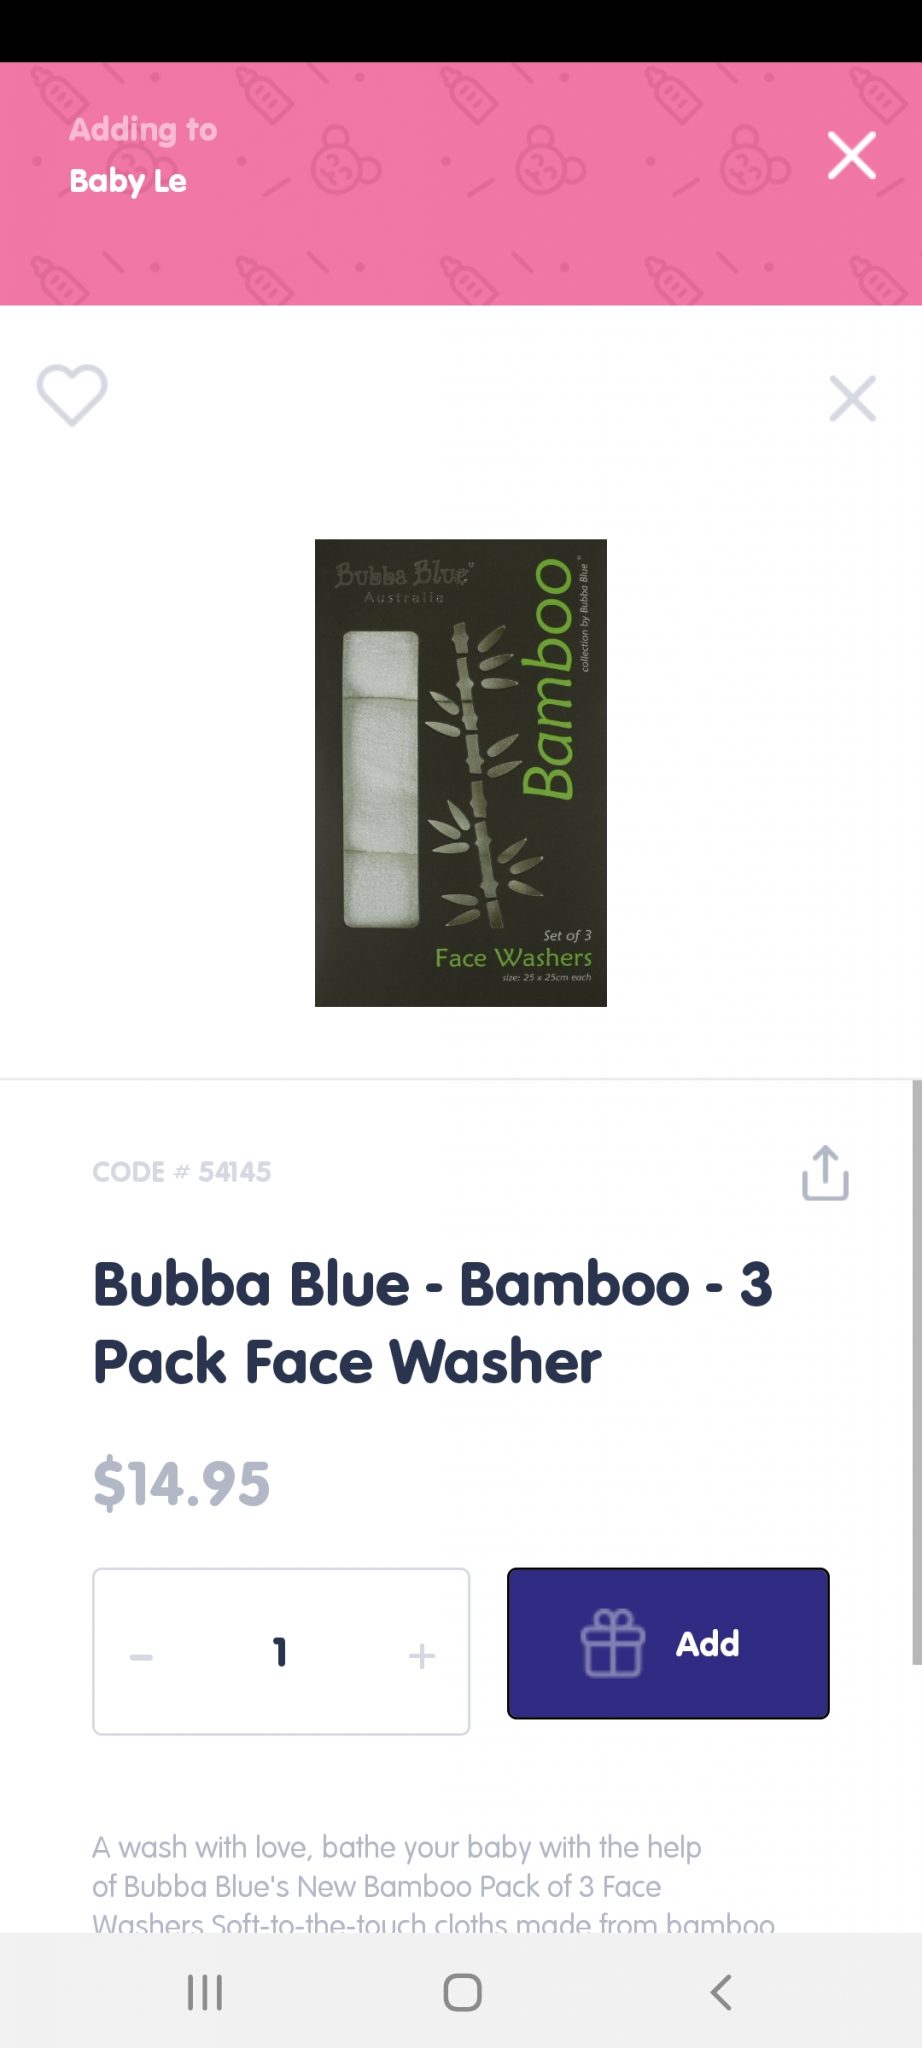 Bubba blue bamboo face washer